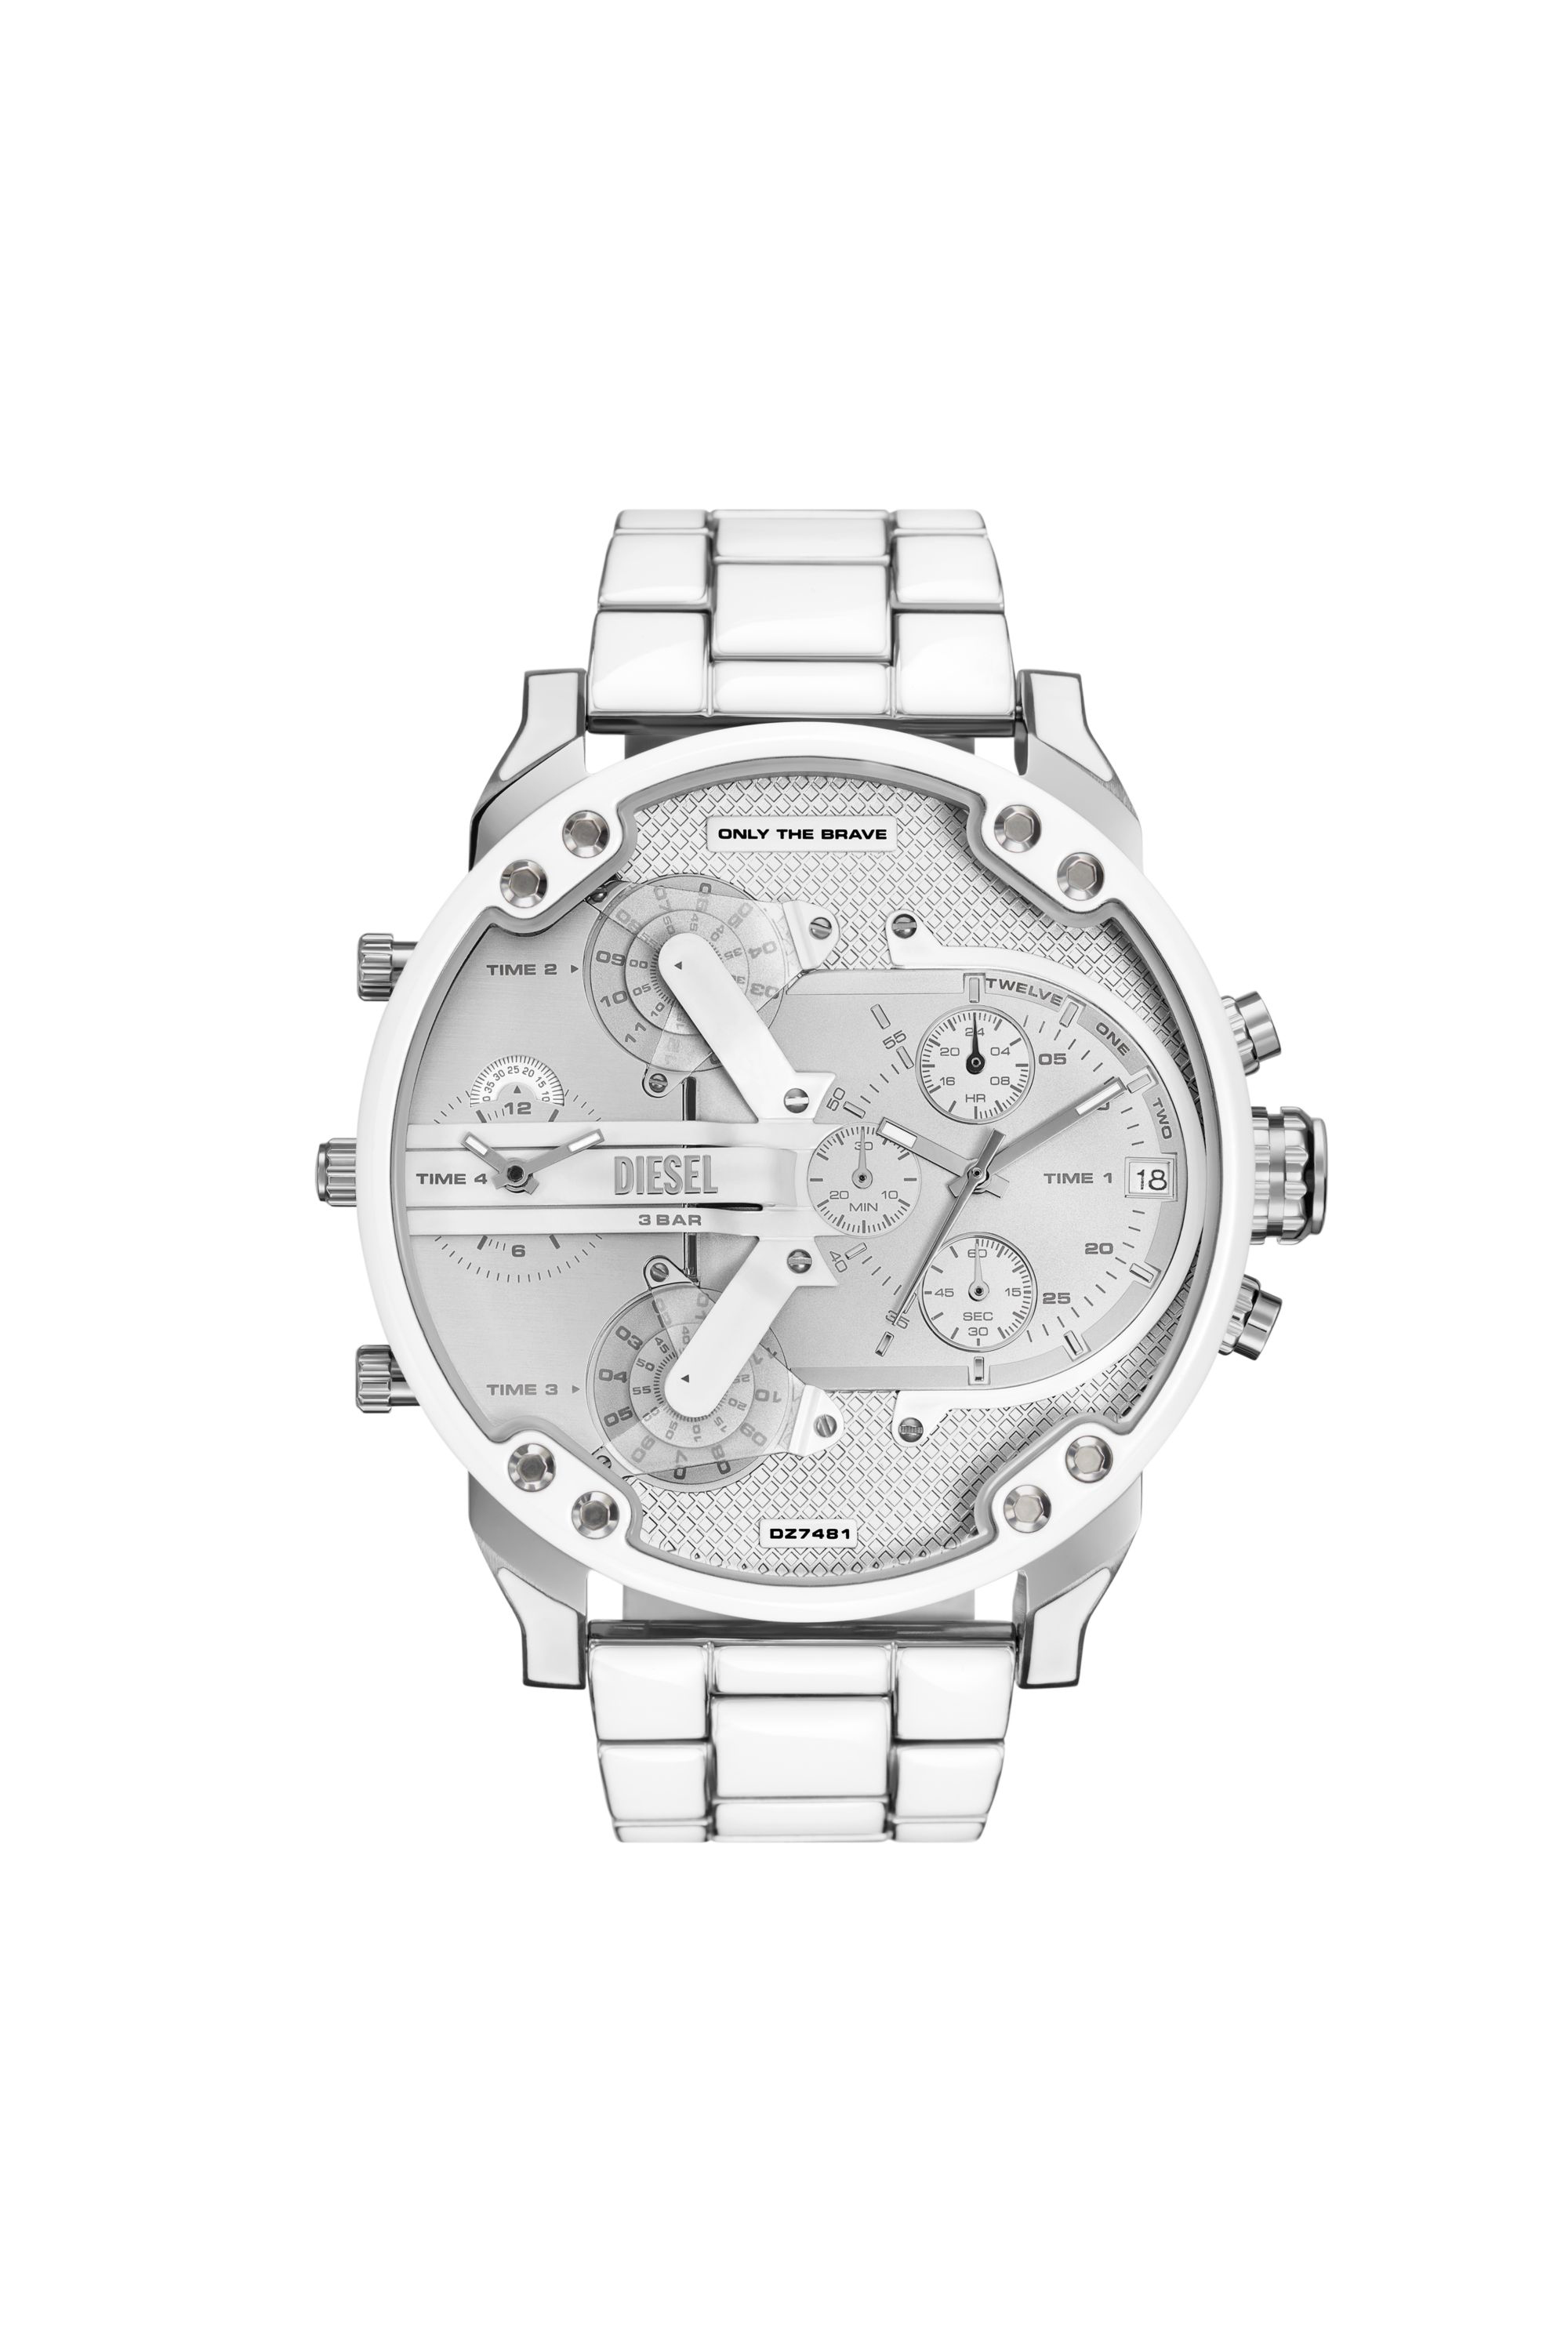 Diesel - DZ7481, Herren Mr. Daddy 2.0 Armbanduhr aus Edelstahl mit weißen Akzenten in Silber - Image 1